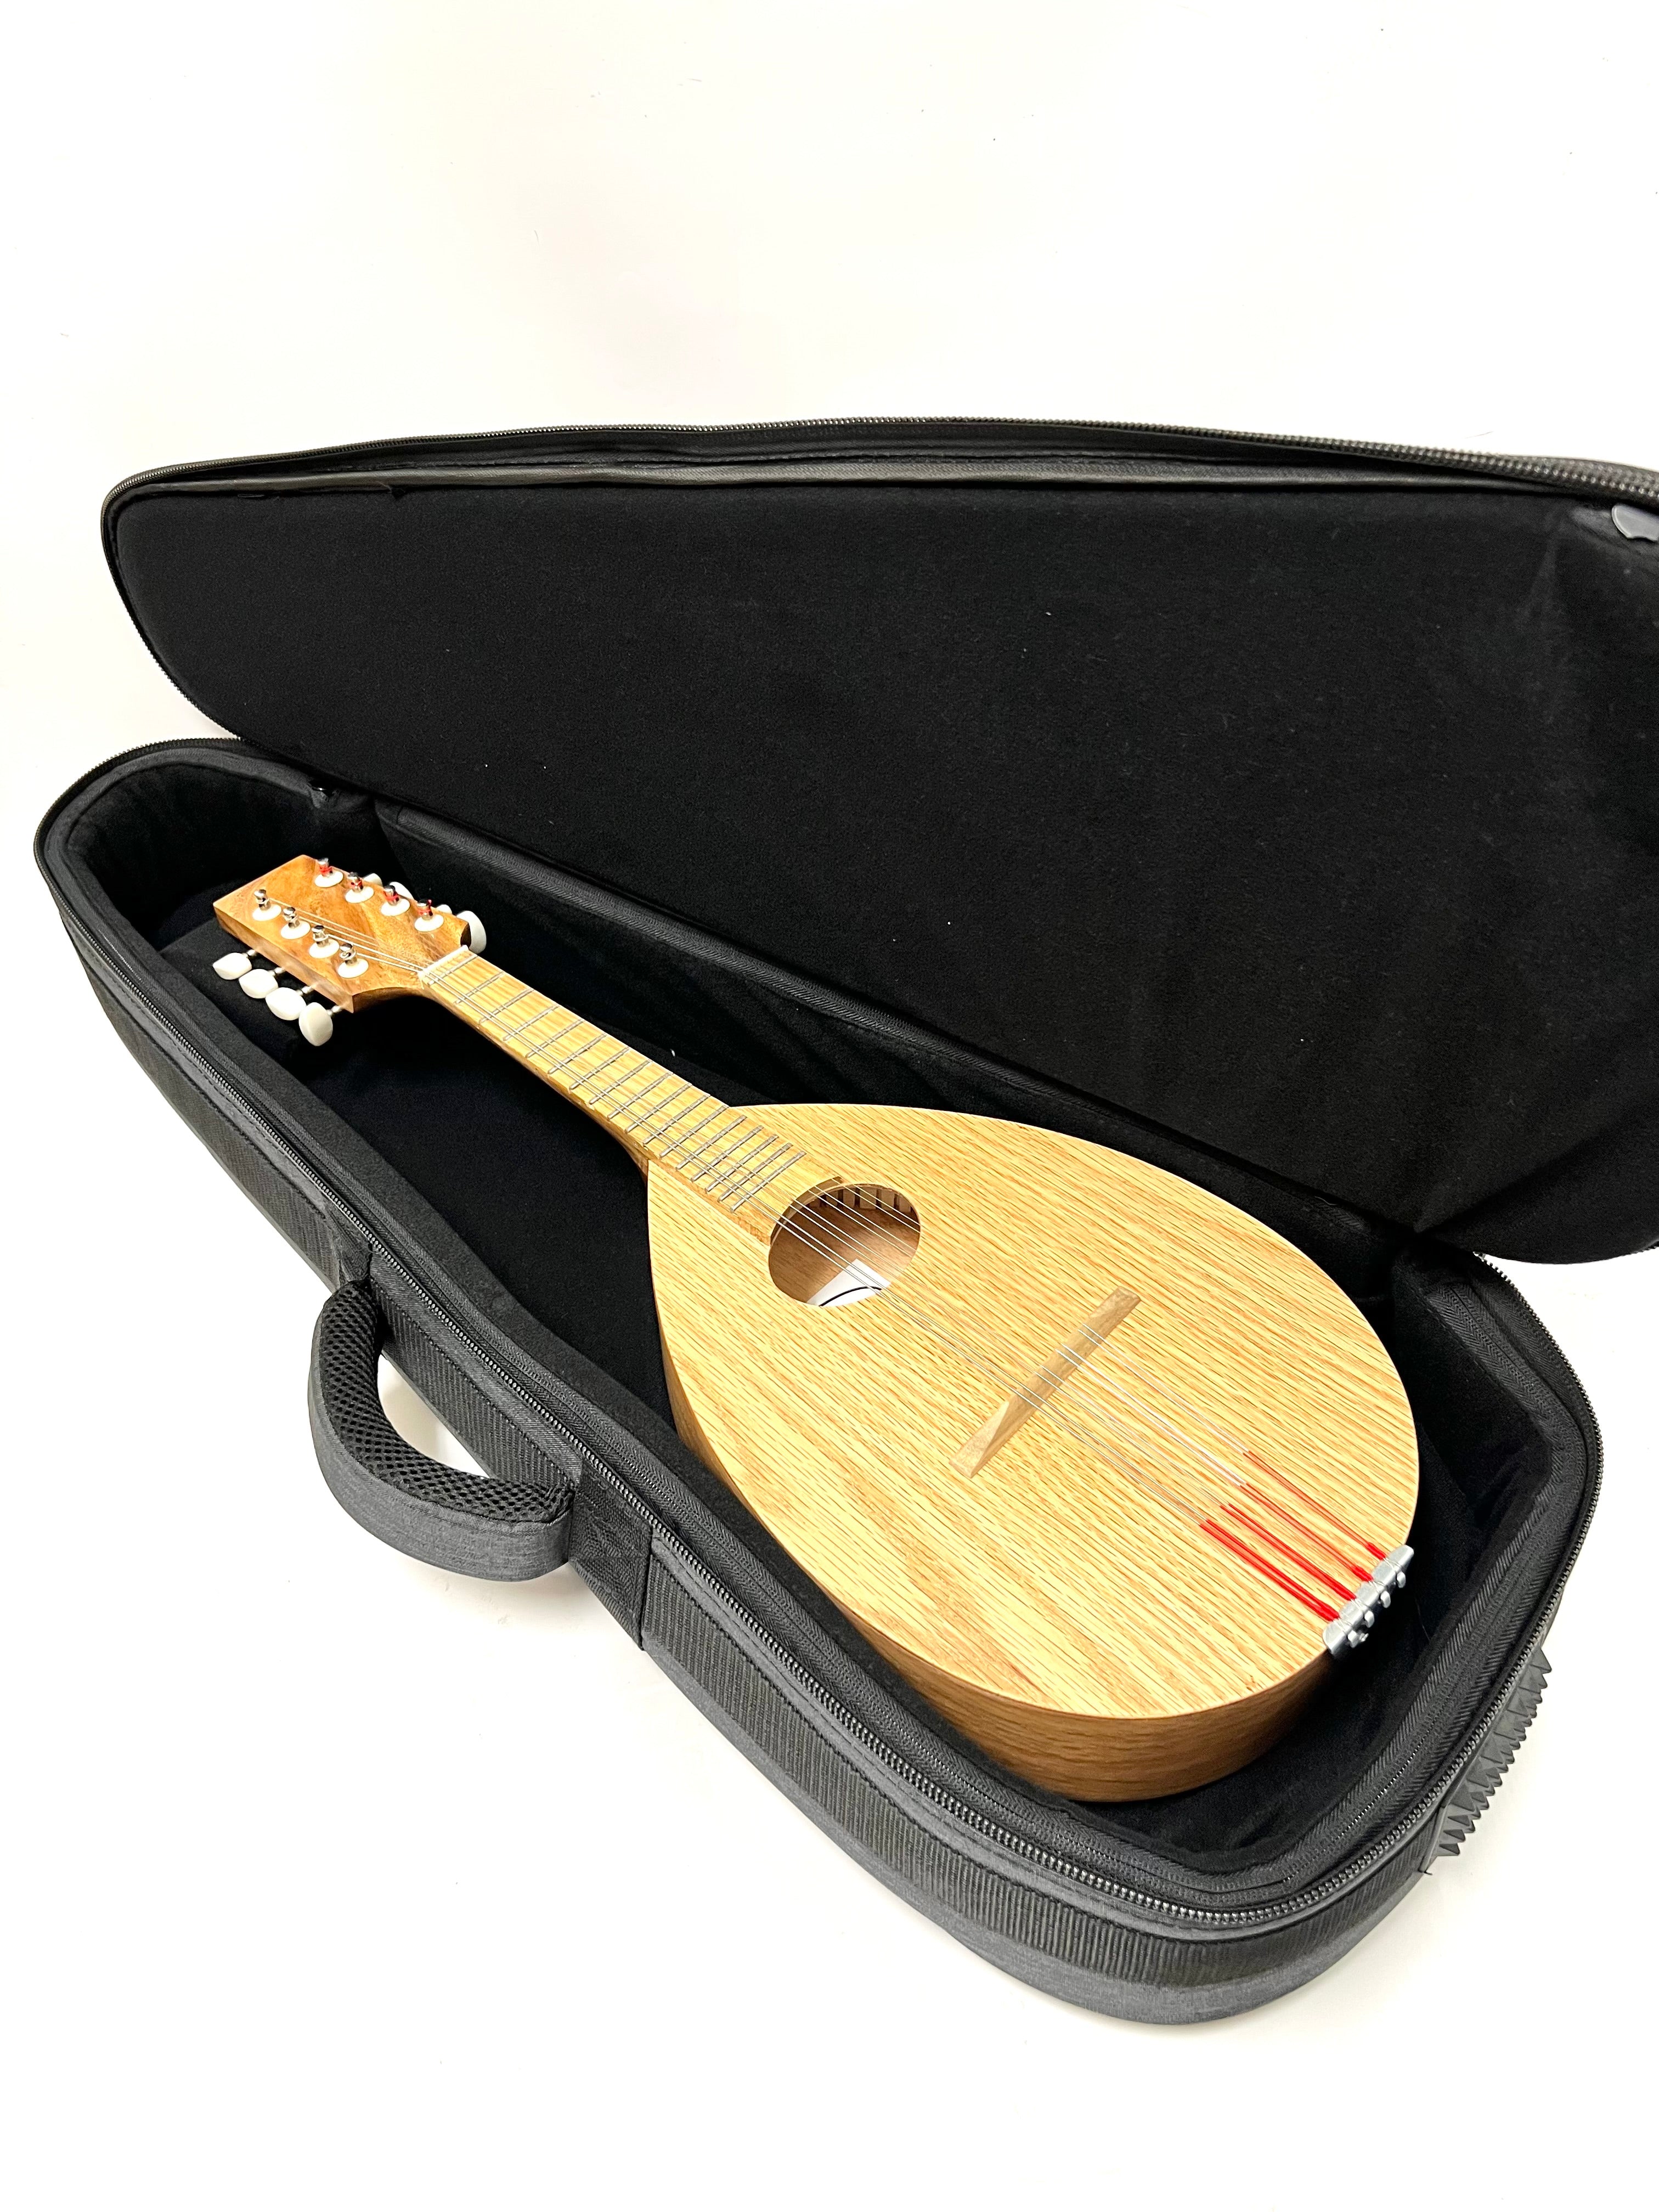 Gig bag for tenor ukulele UKB-60T